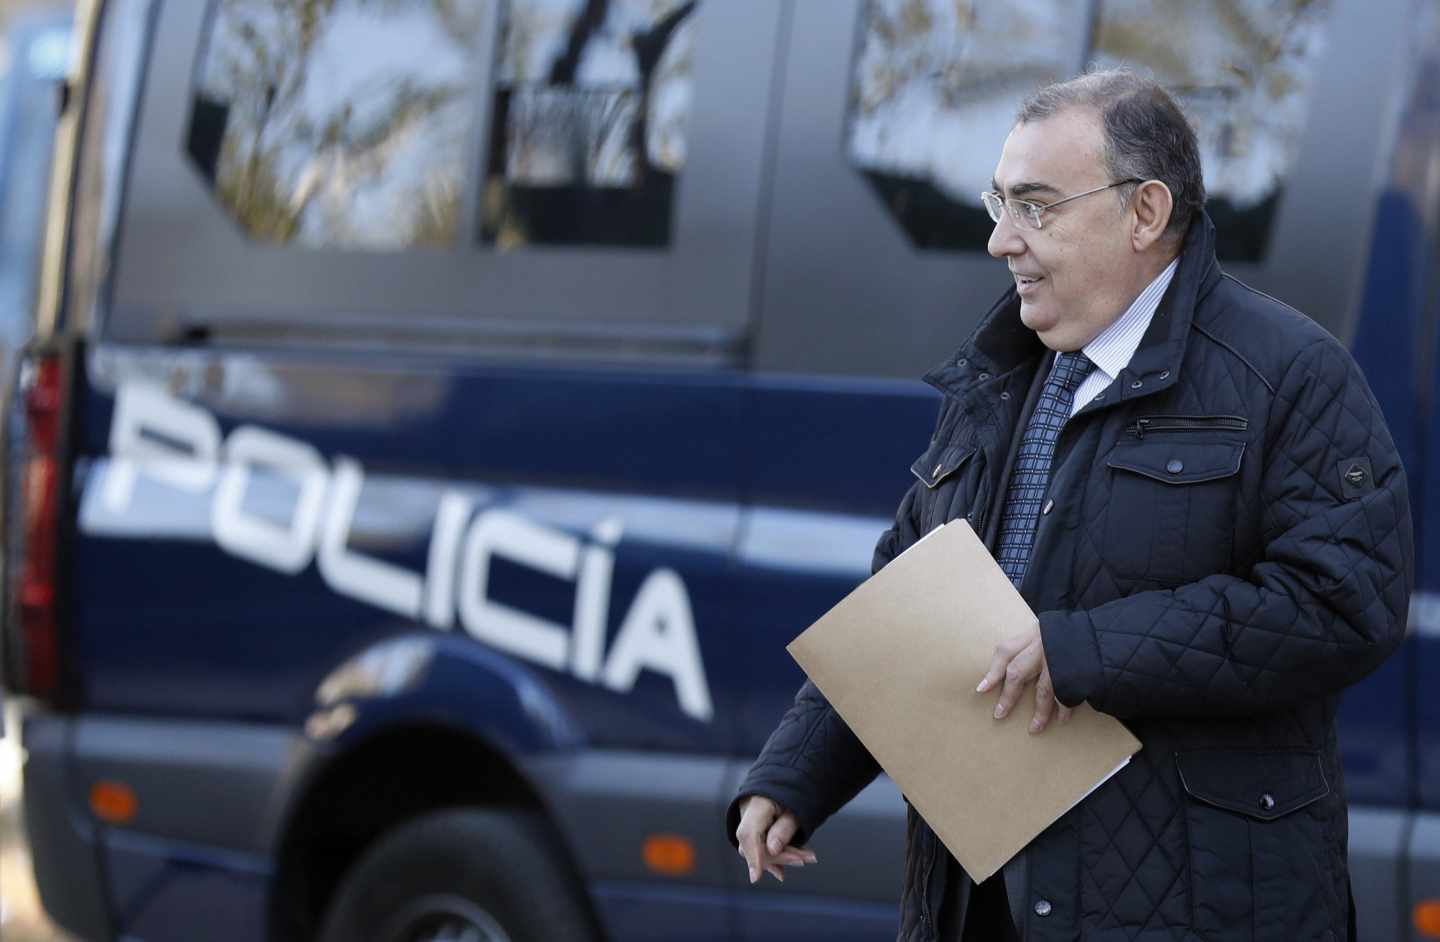 El comisario Enrique García Castaño, llegando este martes a la Audiencia Nacional para declarar ante el juez del 'caso Villarejo'.